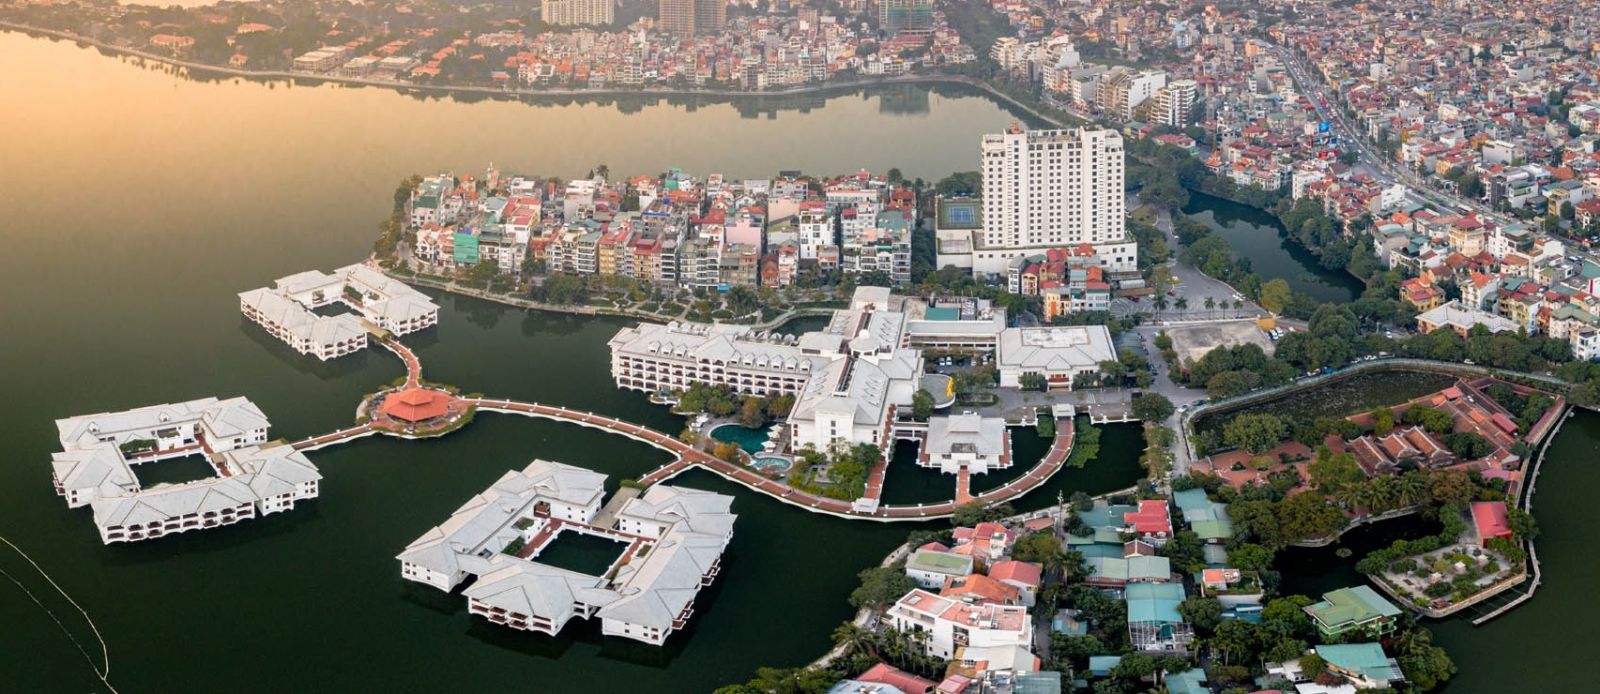 Hiện khu vực nội đô các thành phố lớn như Hà Nội, TP.HCM đều đối mặt với sự cạn kiệt quỹ đất khiến giá bất động sản thiết lập ở mức cao.